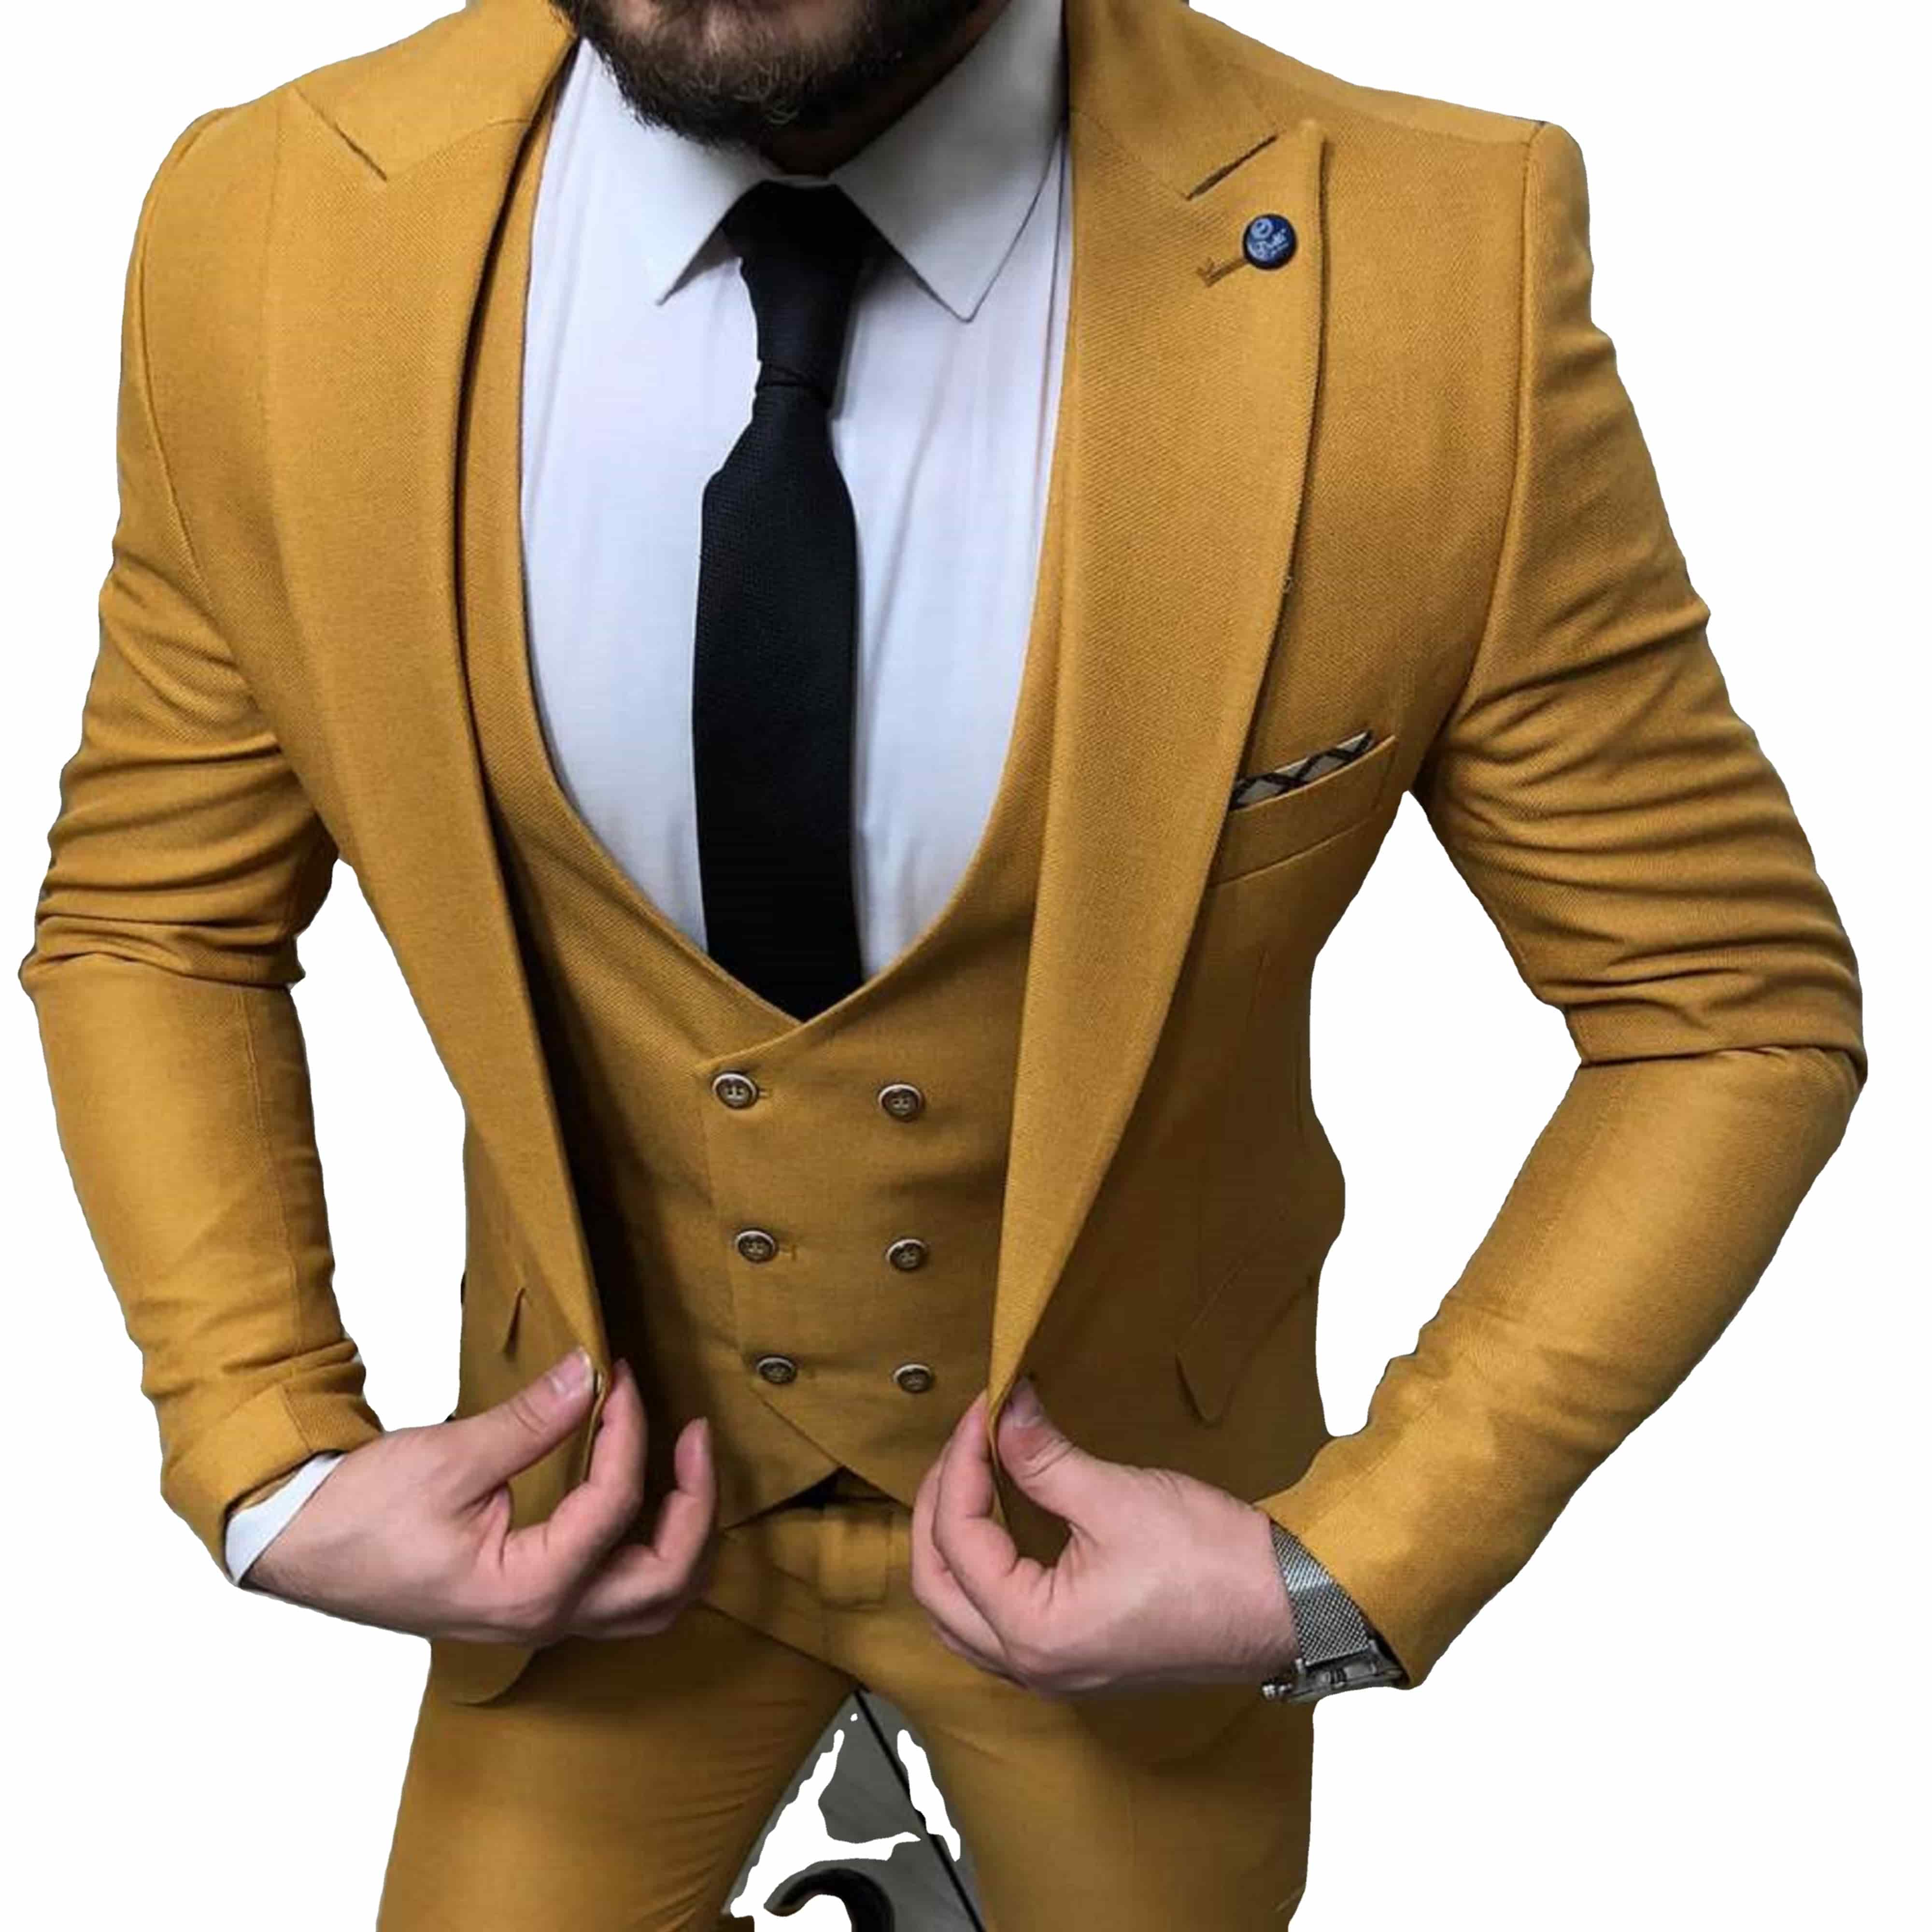 لباس مجلسی مردانه تجاری زرد رنگ 